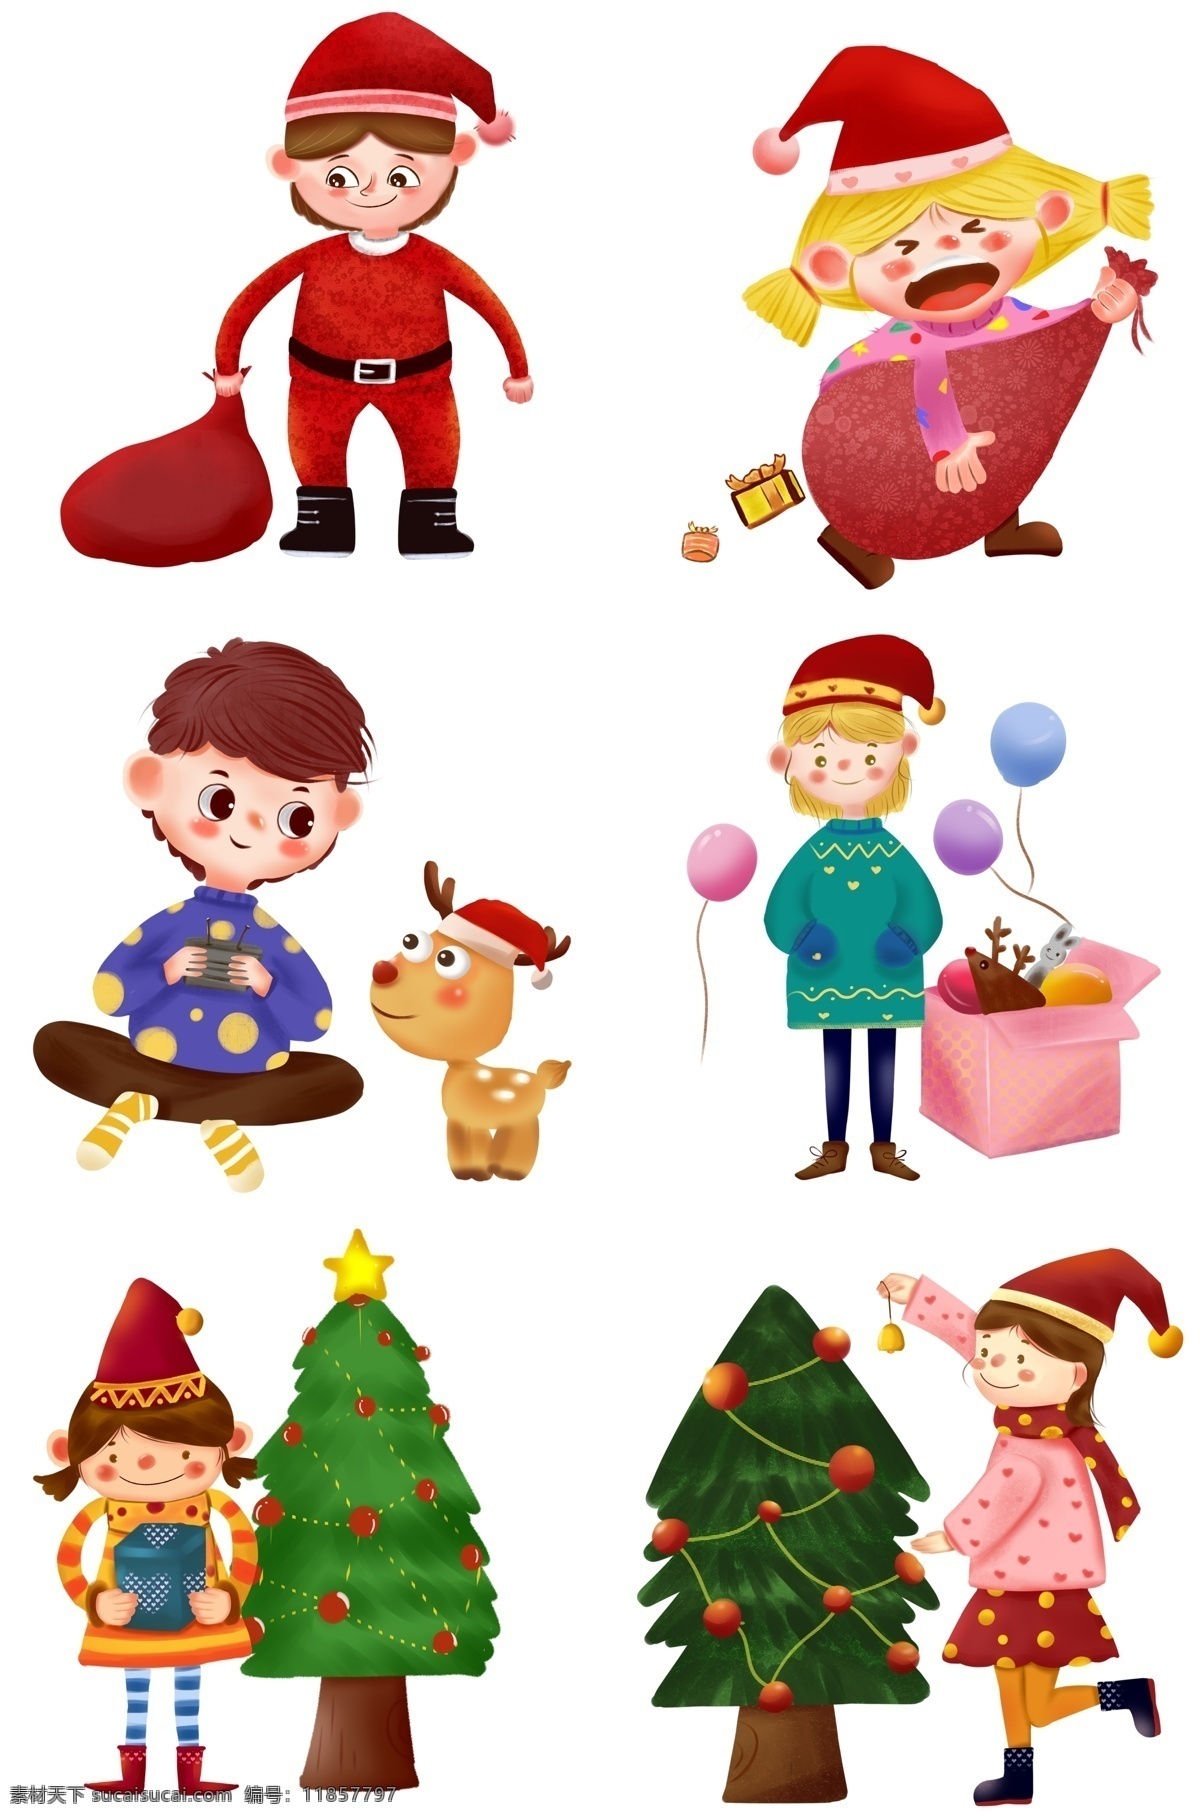 卡通 圣诞节 手绘 插图 装扮圣诞树 气球 麋鹿 礼物袋 儿插风格 小女孩 冬季 圣诞 圣诞节日 西方节日 手绘红果 装饰松树